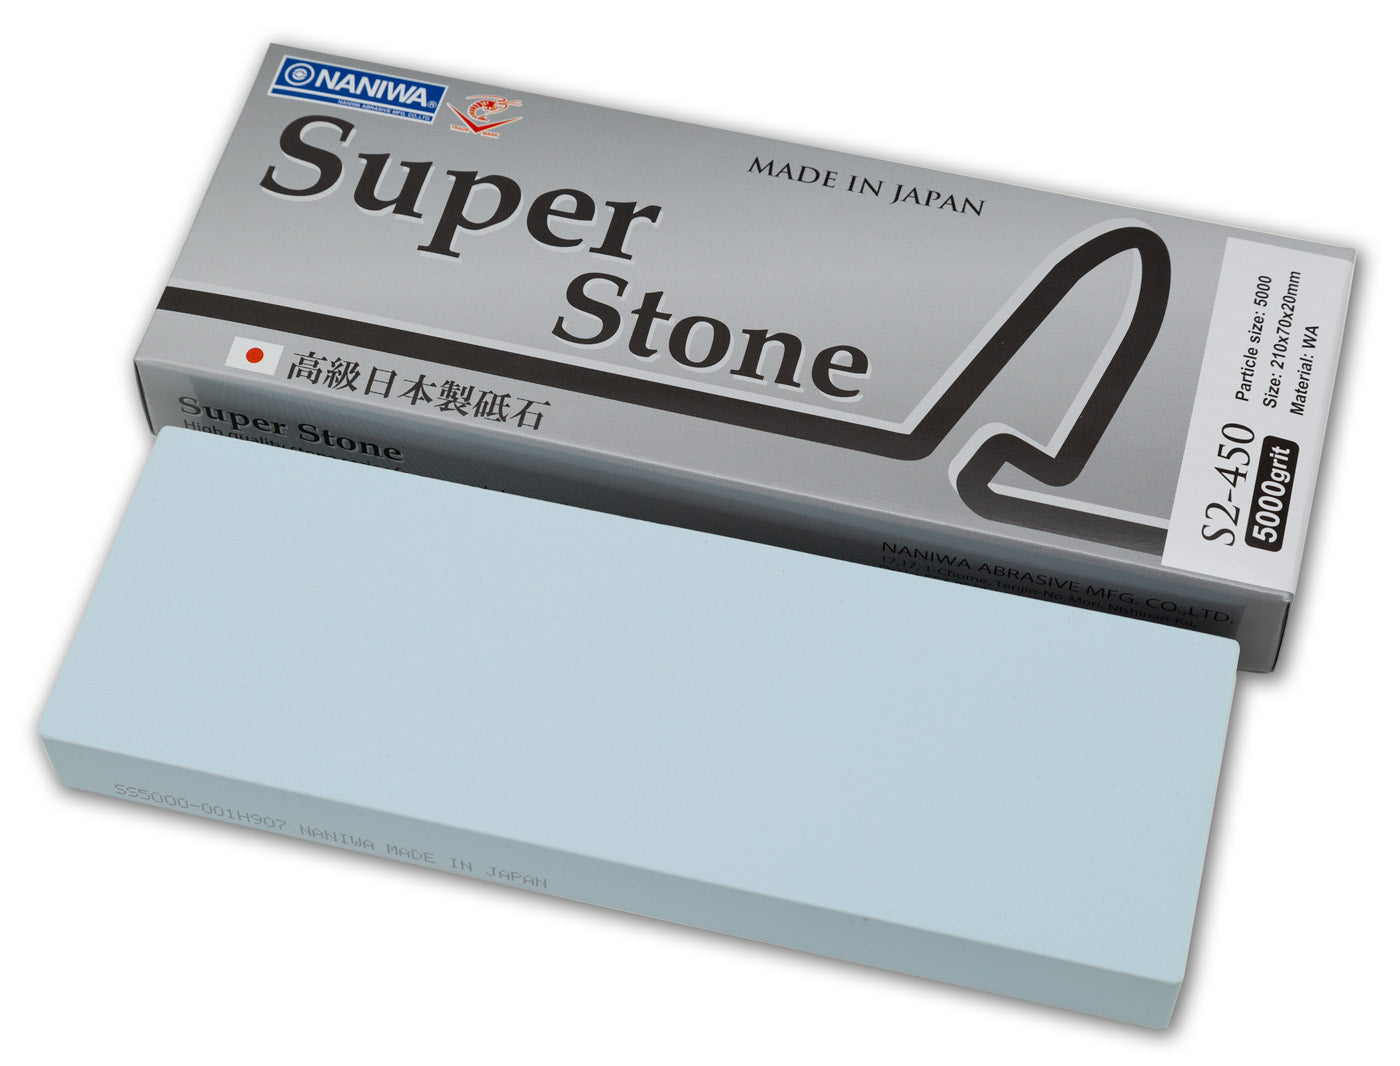 Naniwa Super-Stone Japanese Whetstone Sharpening Stone, 5000 grit